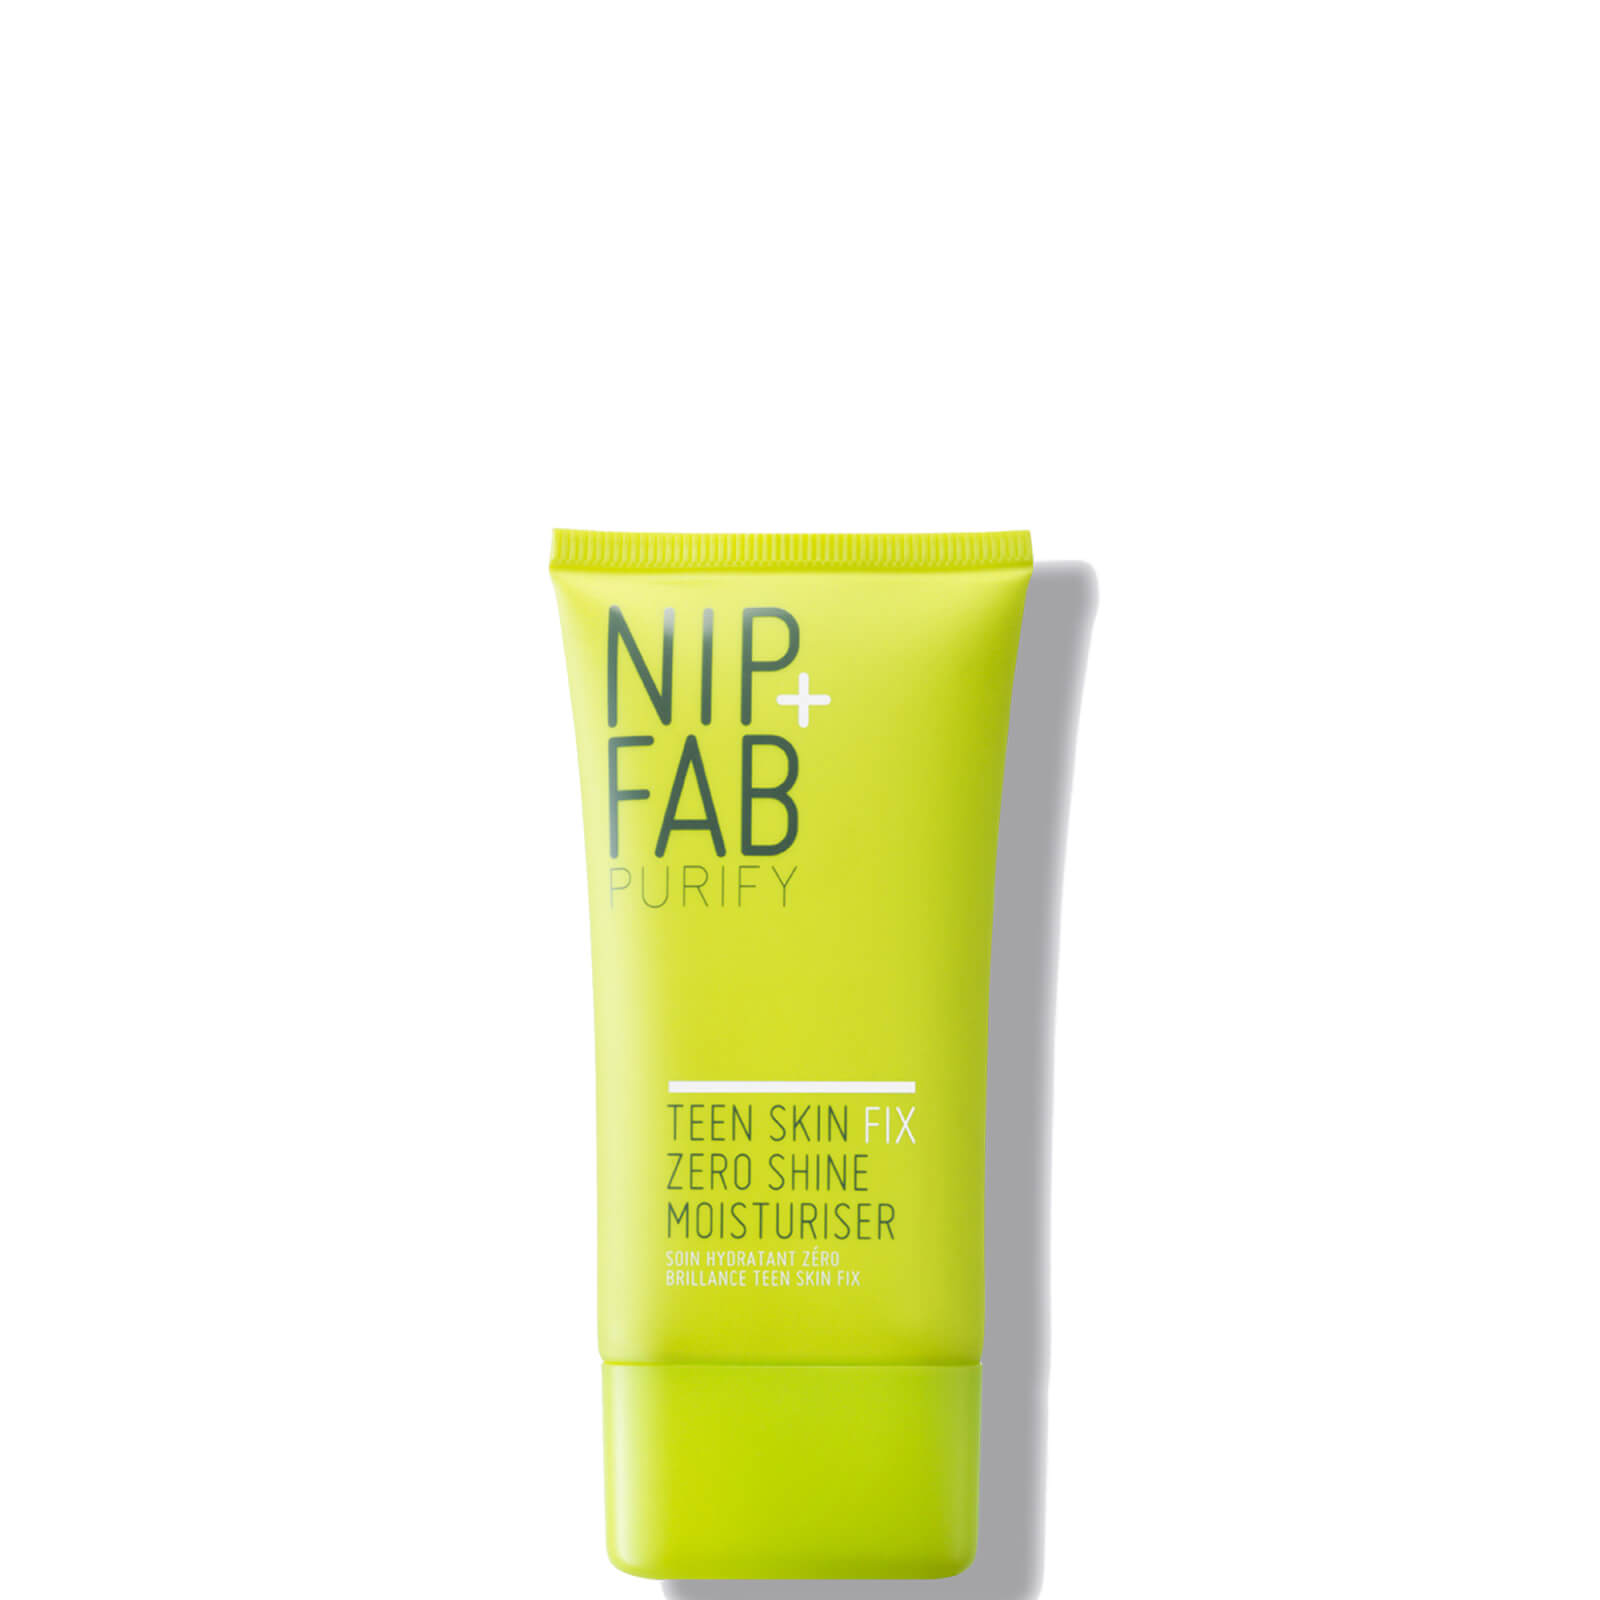 NIP+FAB Teen Skin Fix Zero Shine Moisturiser 40ml